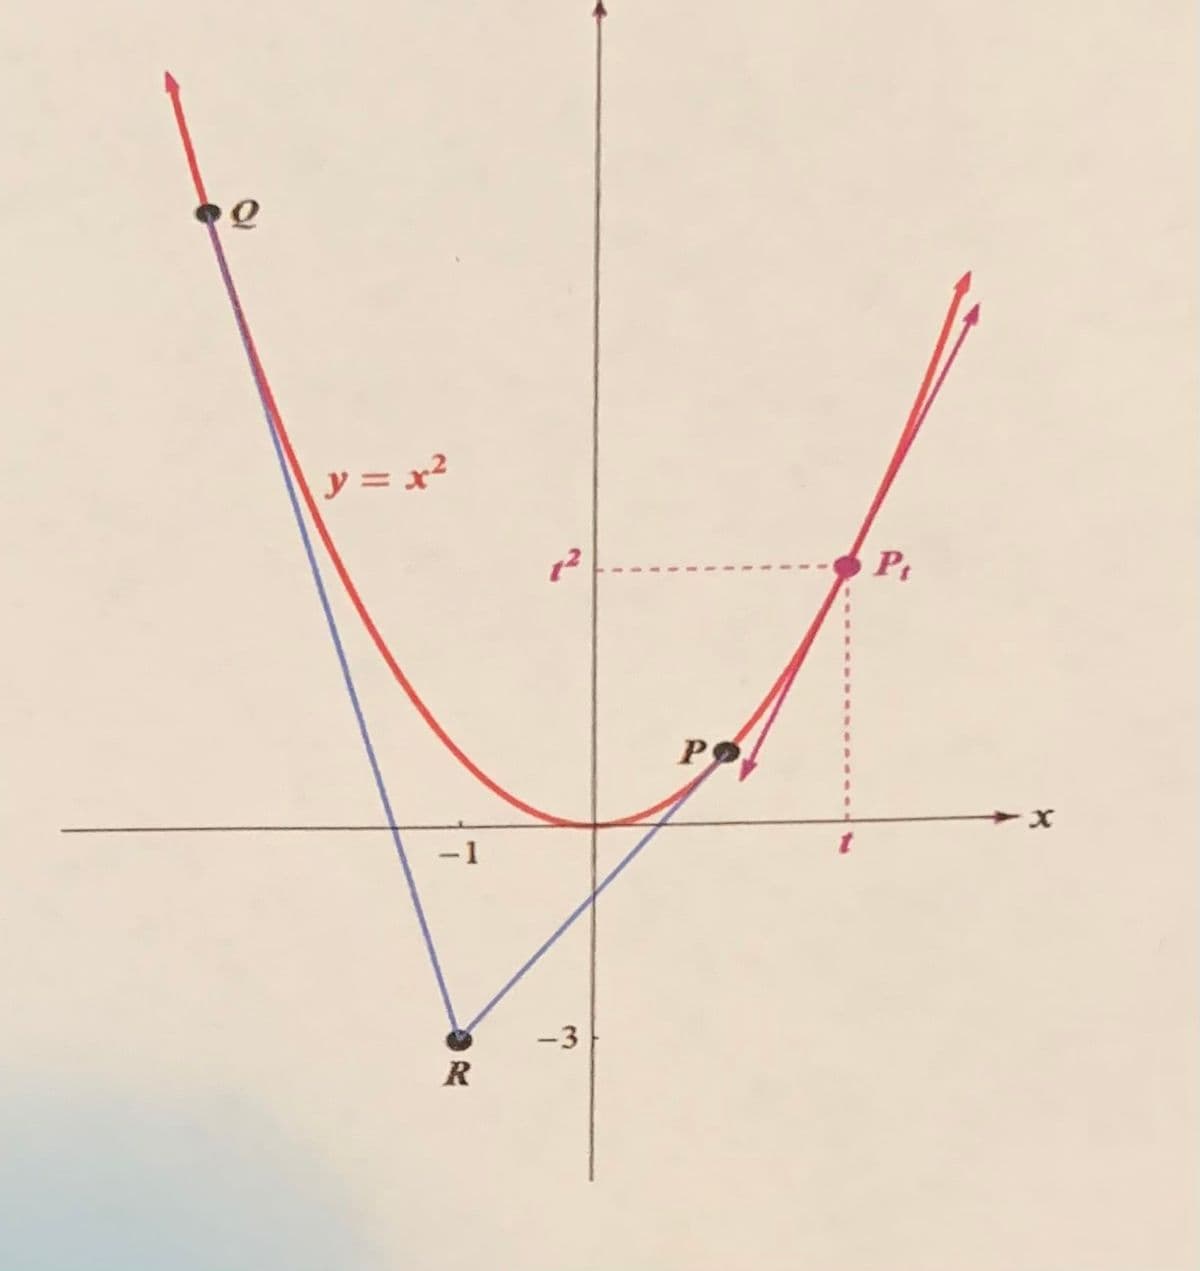 y = x²
Pt
-1
-3
R
